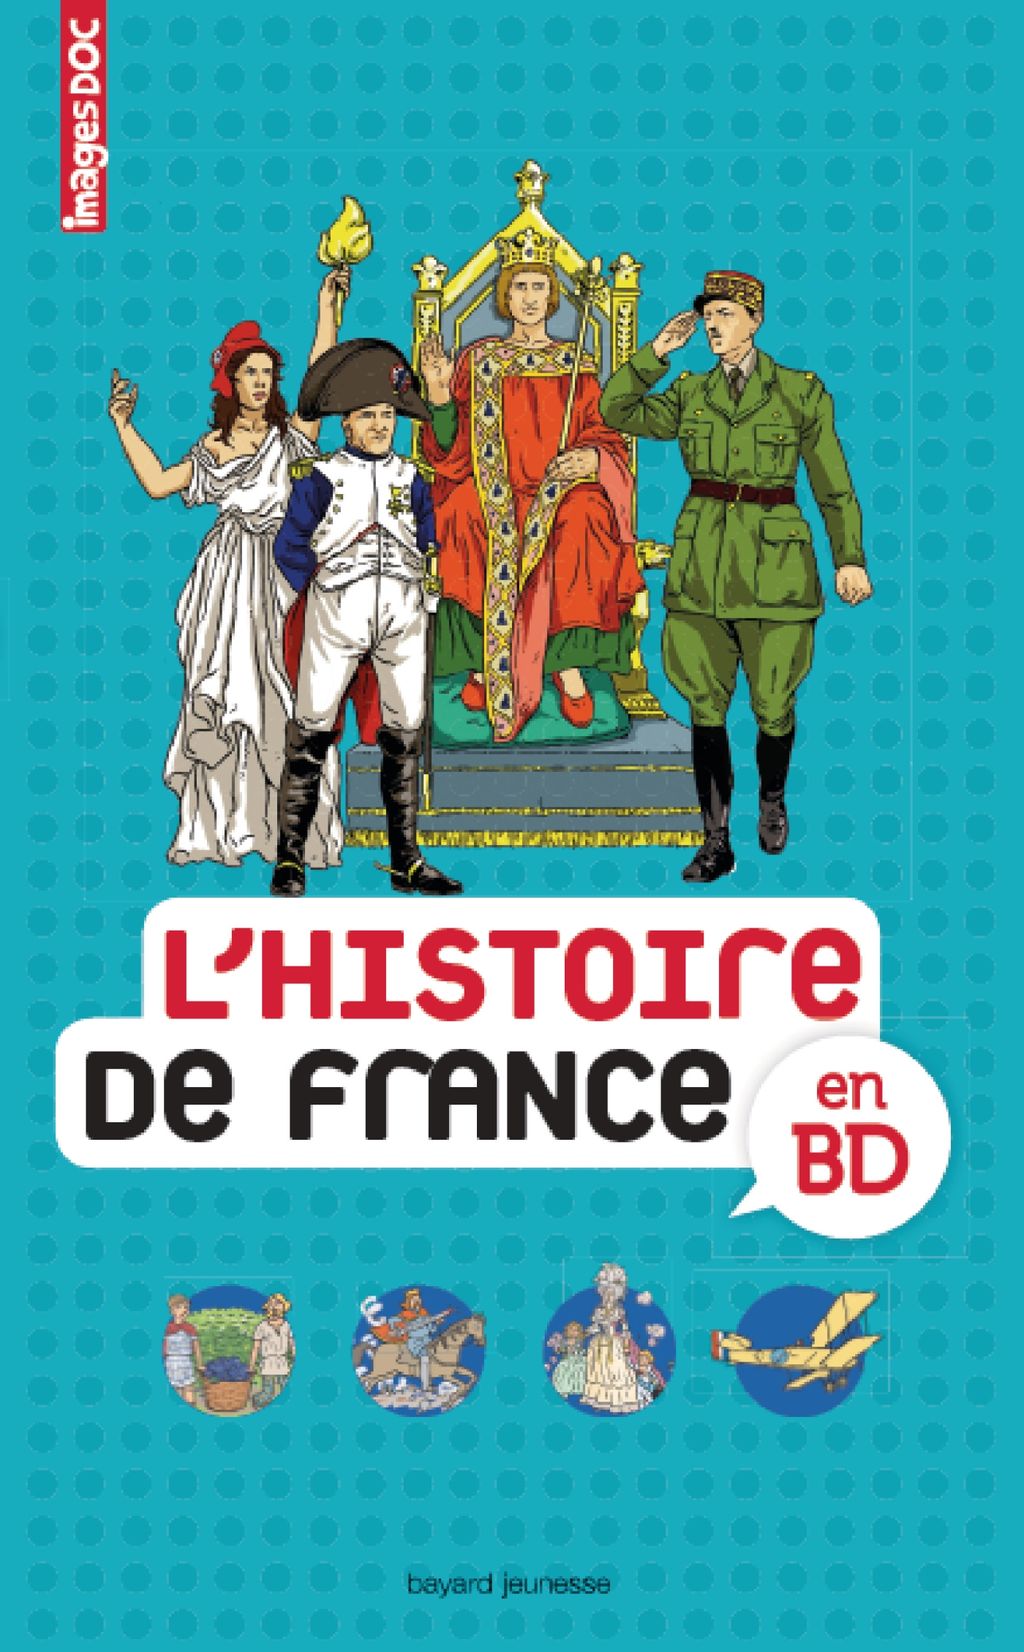 « L’histoire de France en BD » cover